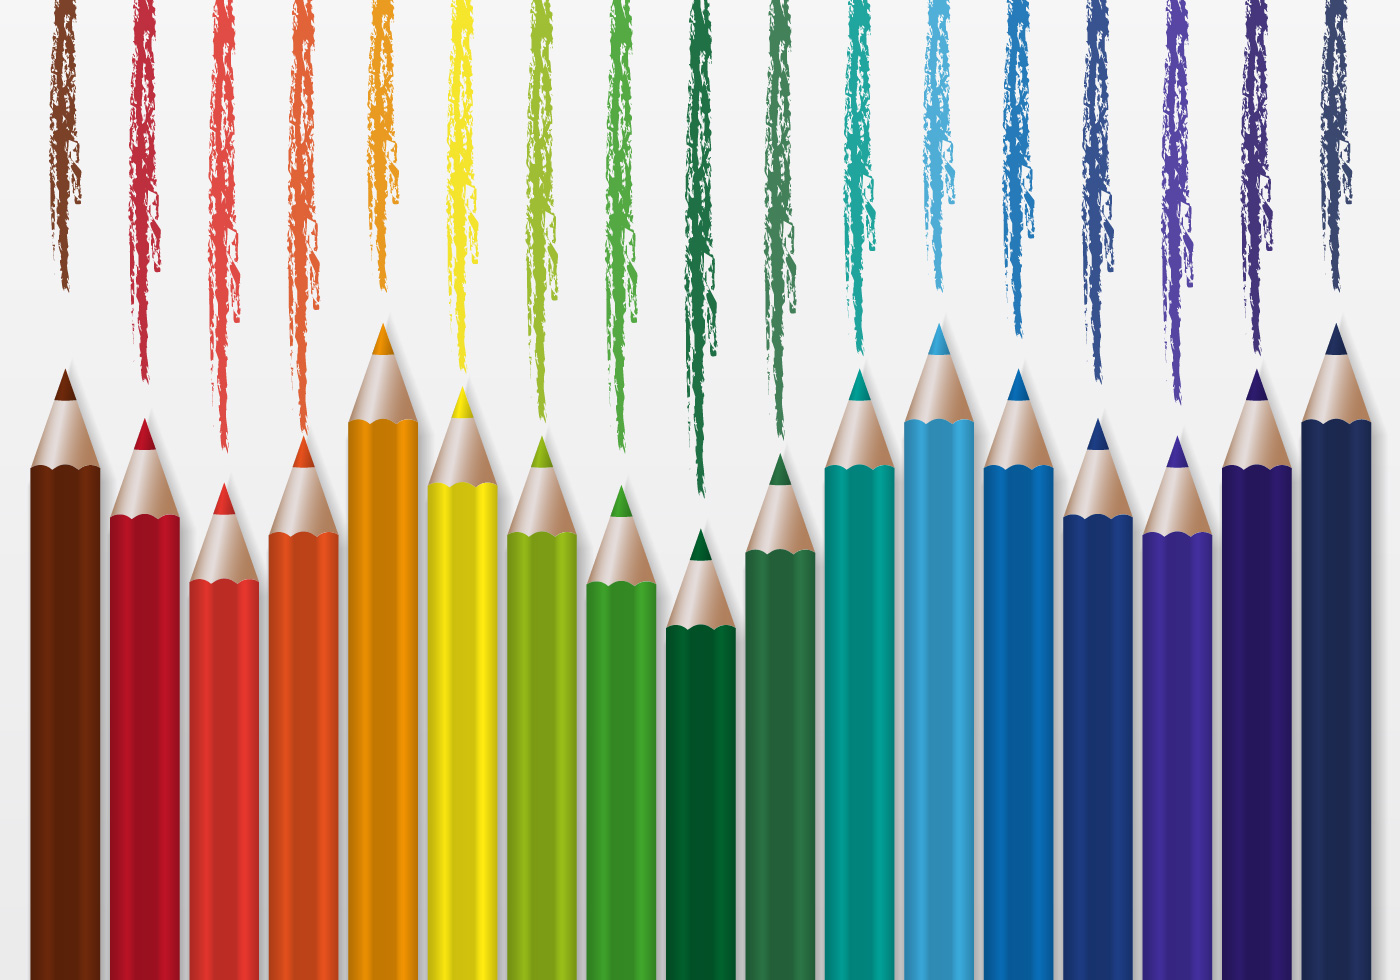 Ten pencils. Карандаши цветные. Цветные карандаши вектор. Цветные карандаши в ряд. Карандаши для оформления.